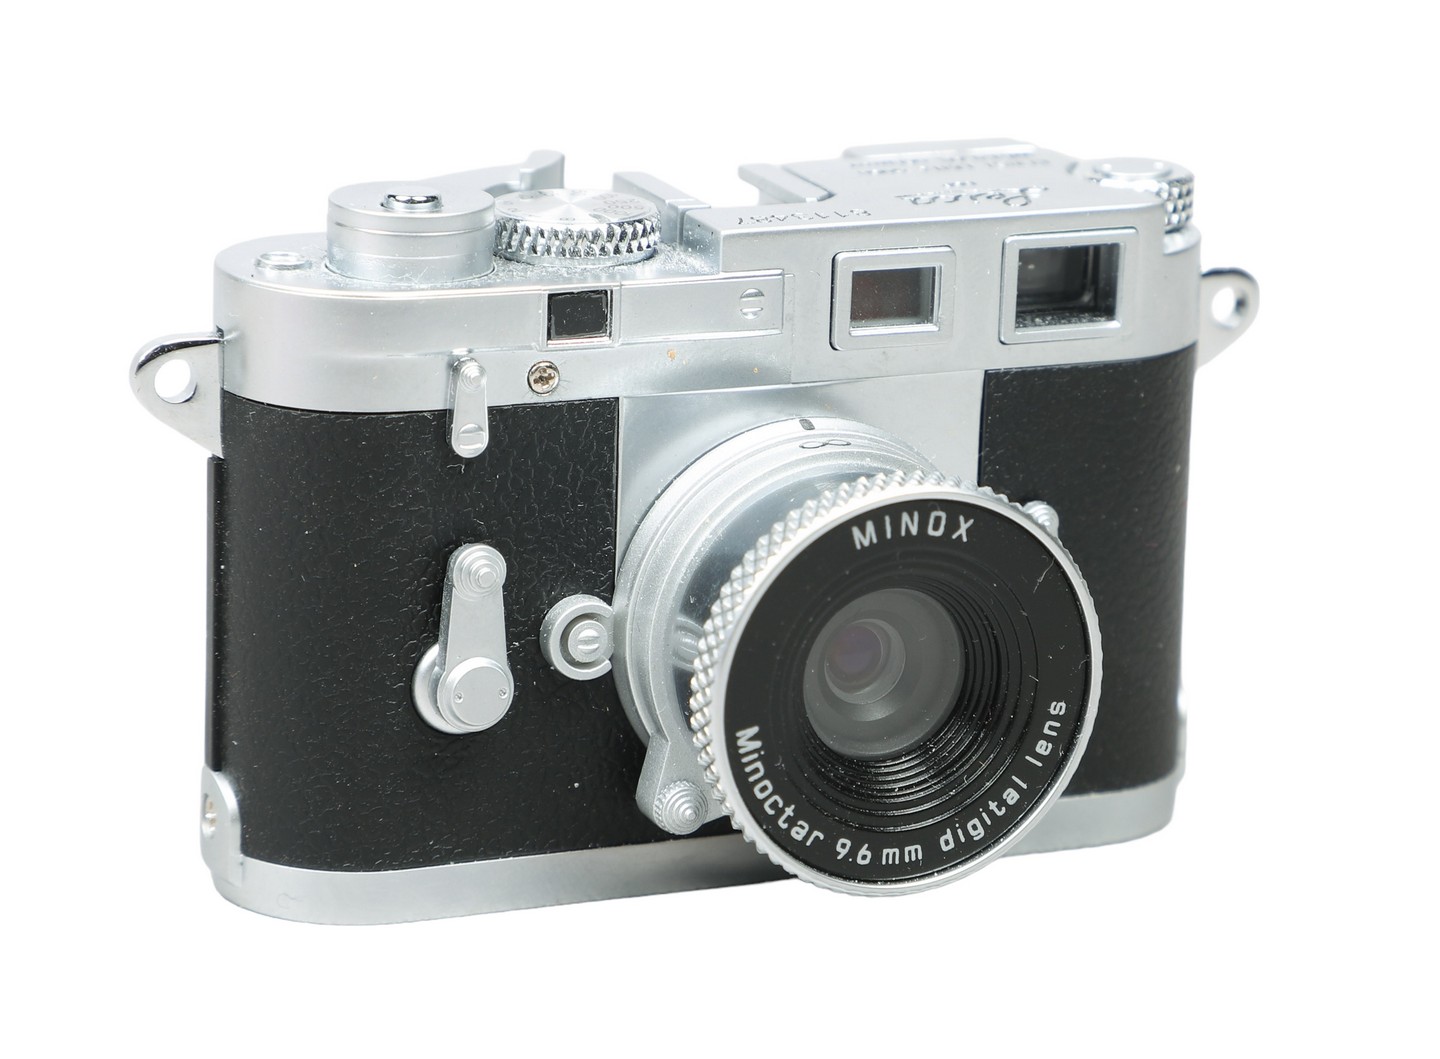 Leica Minox Digital Classic Camera 2e0693